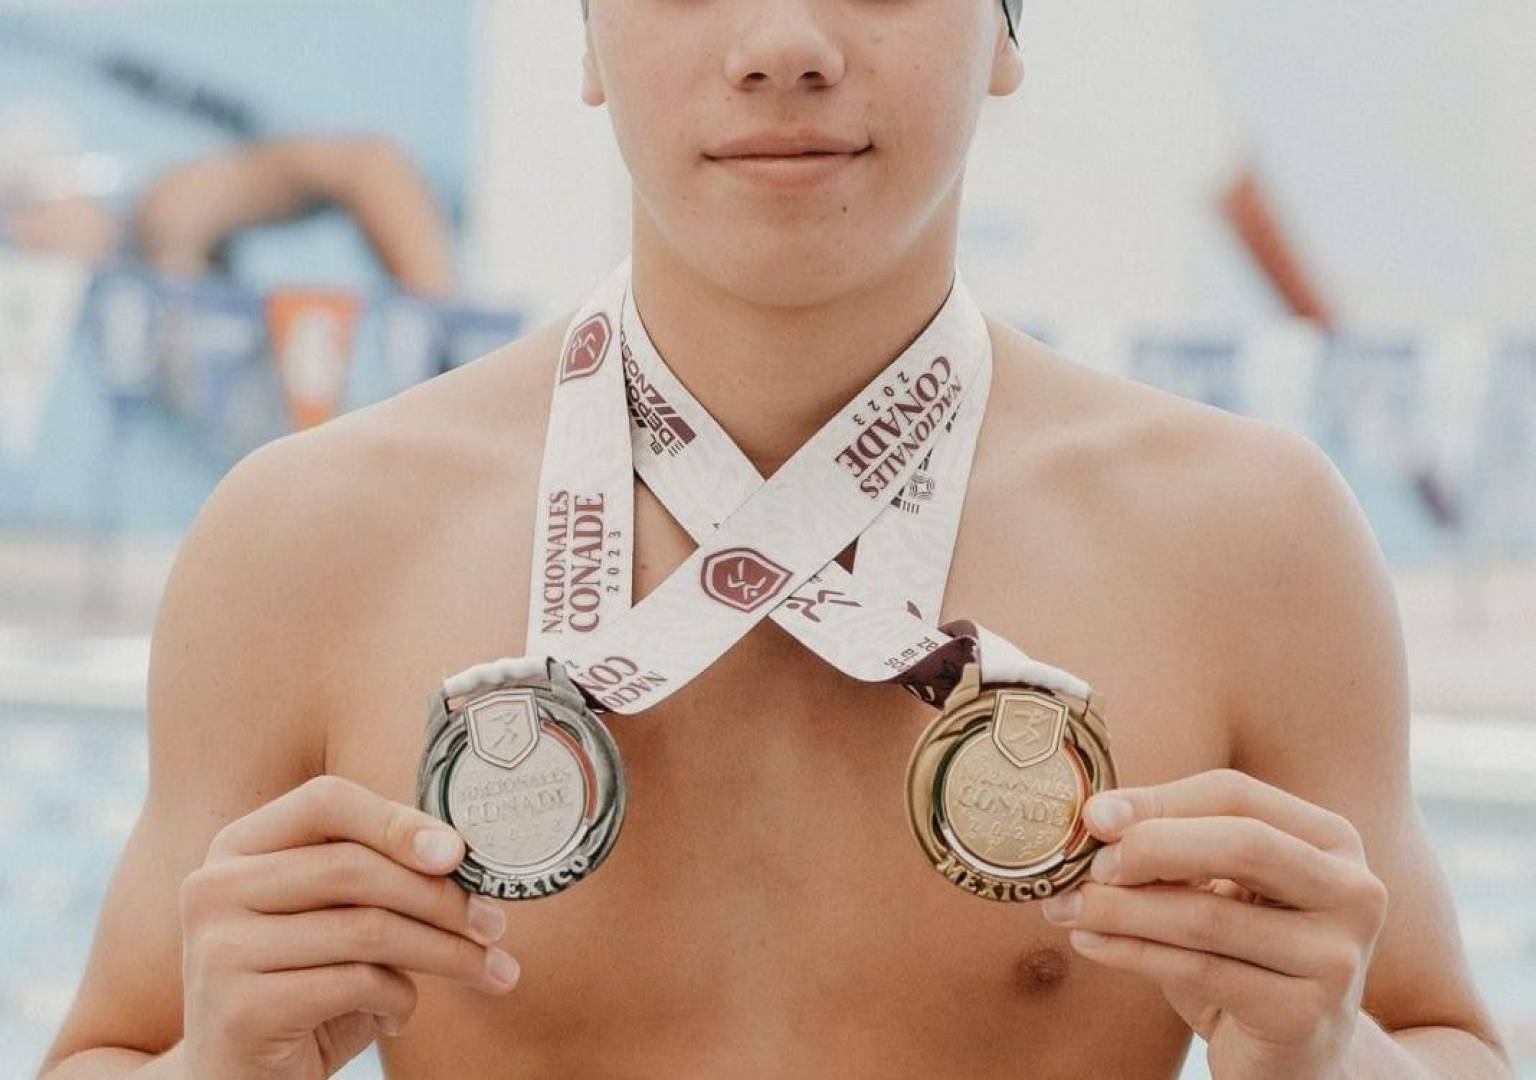 Emilio Méndez Amaya seleccionado para circuito europeo de natación